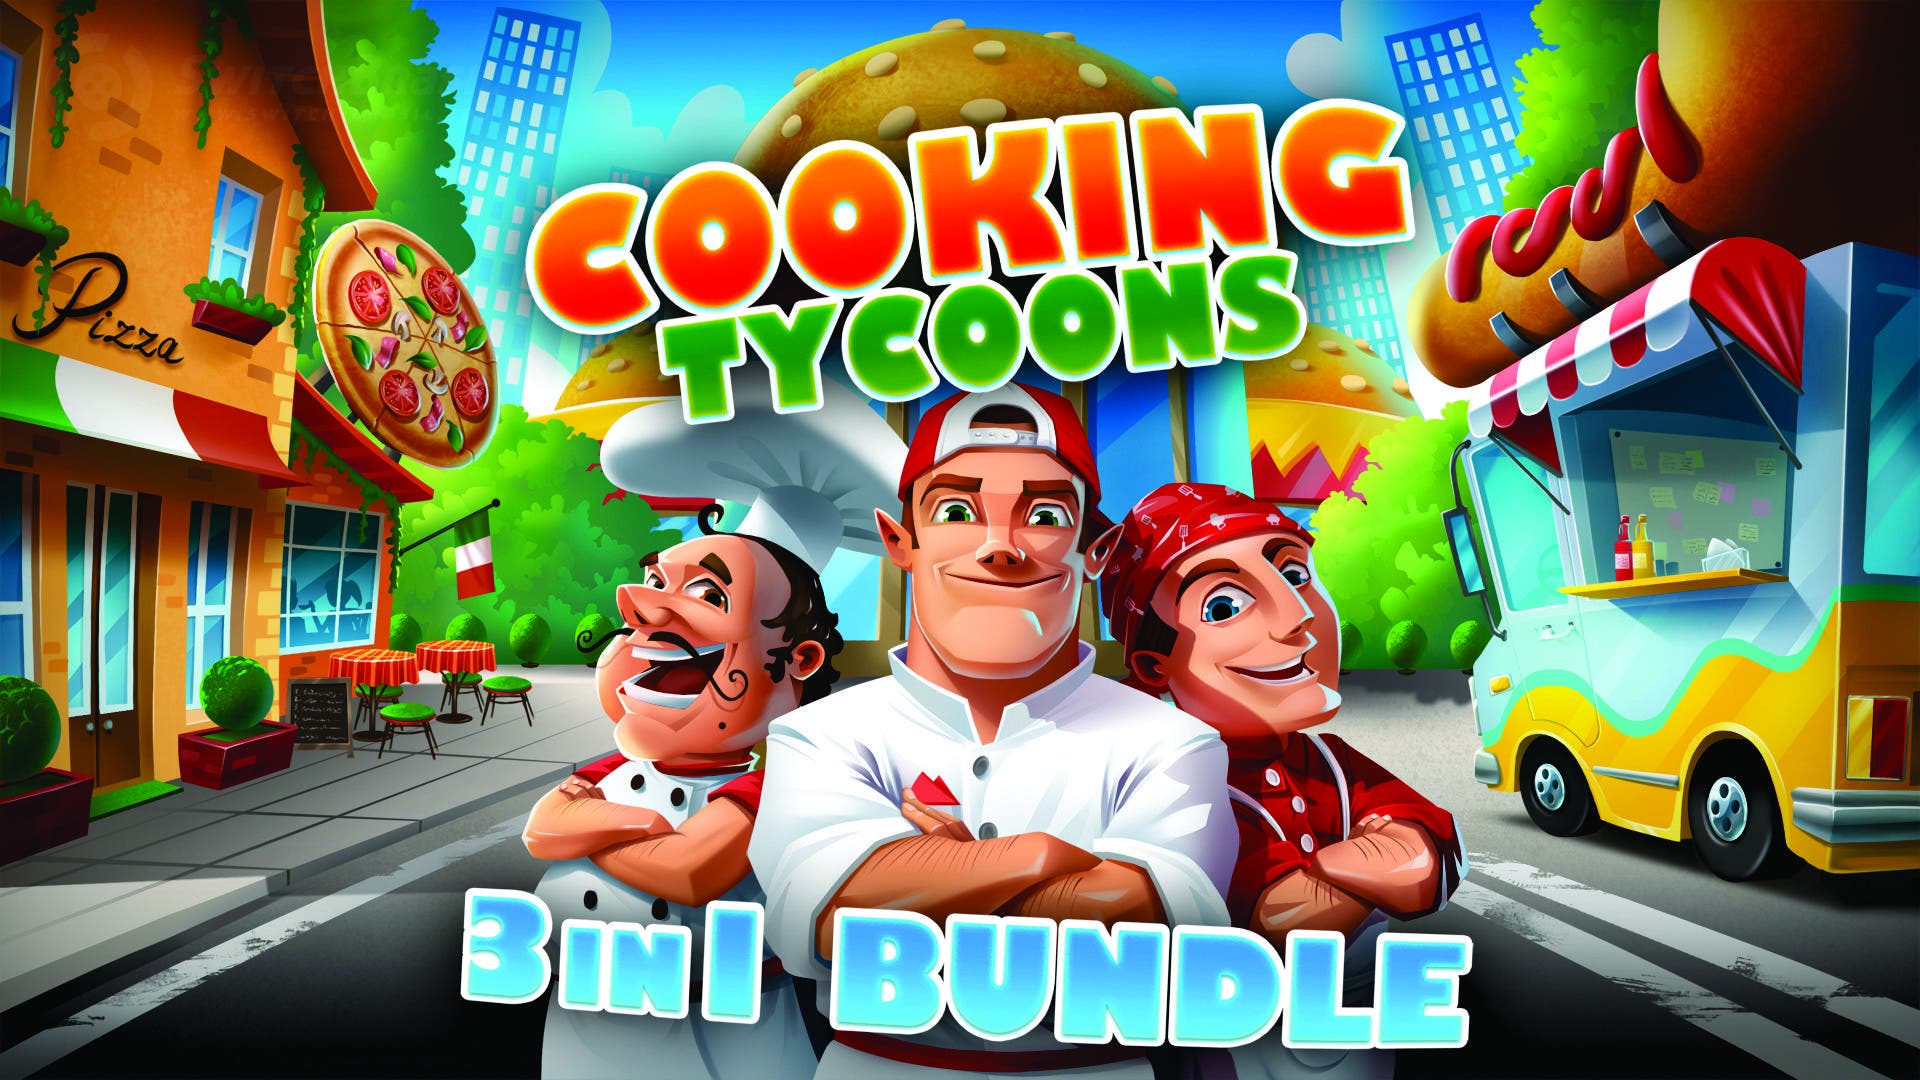 Cooking Tycoons – 3 in 1 Bundle confirma su estreno en Nintendo Switch para el 10 de enero